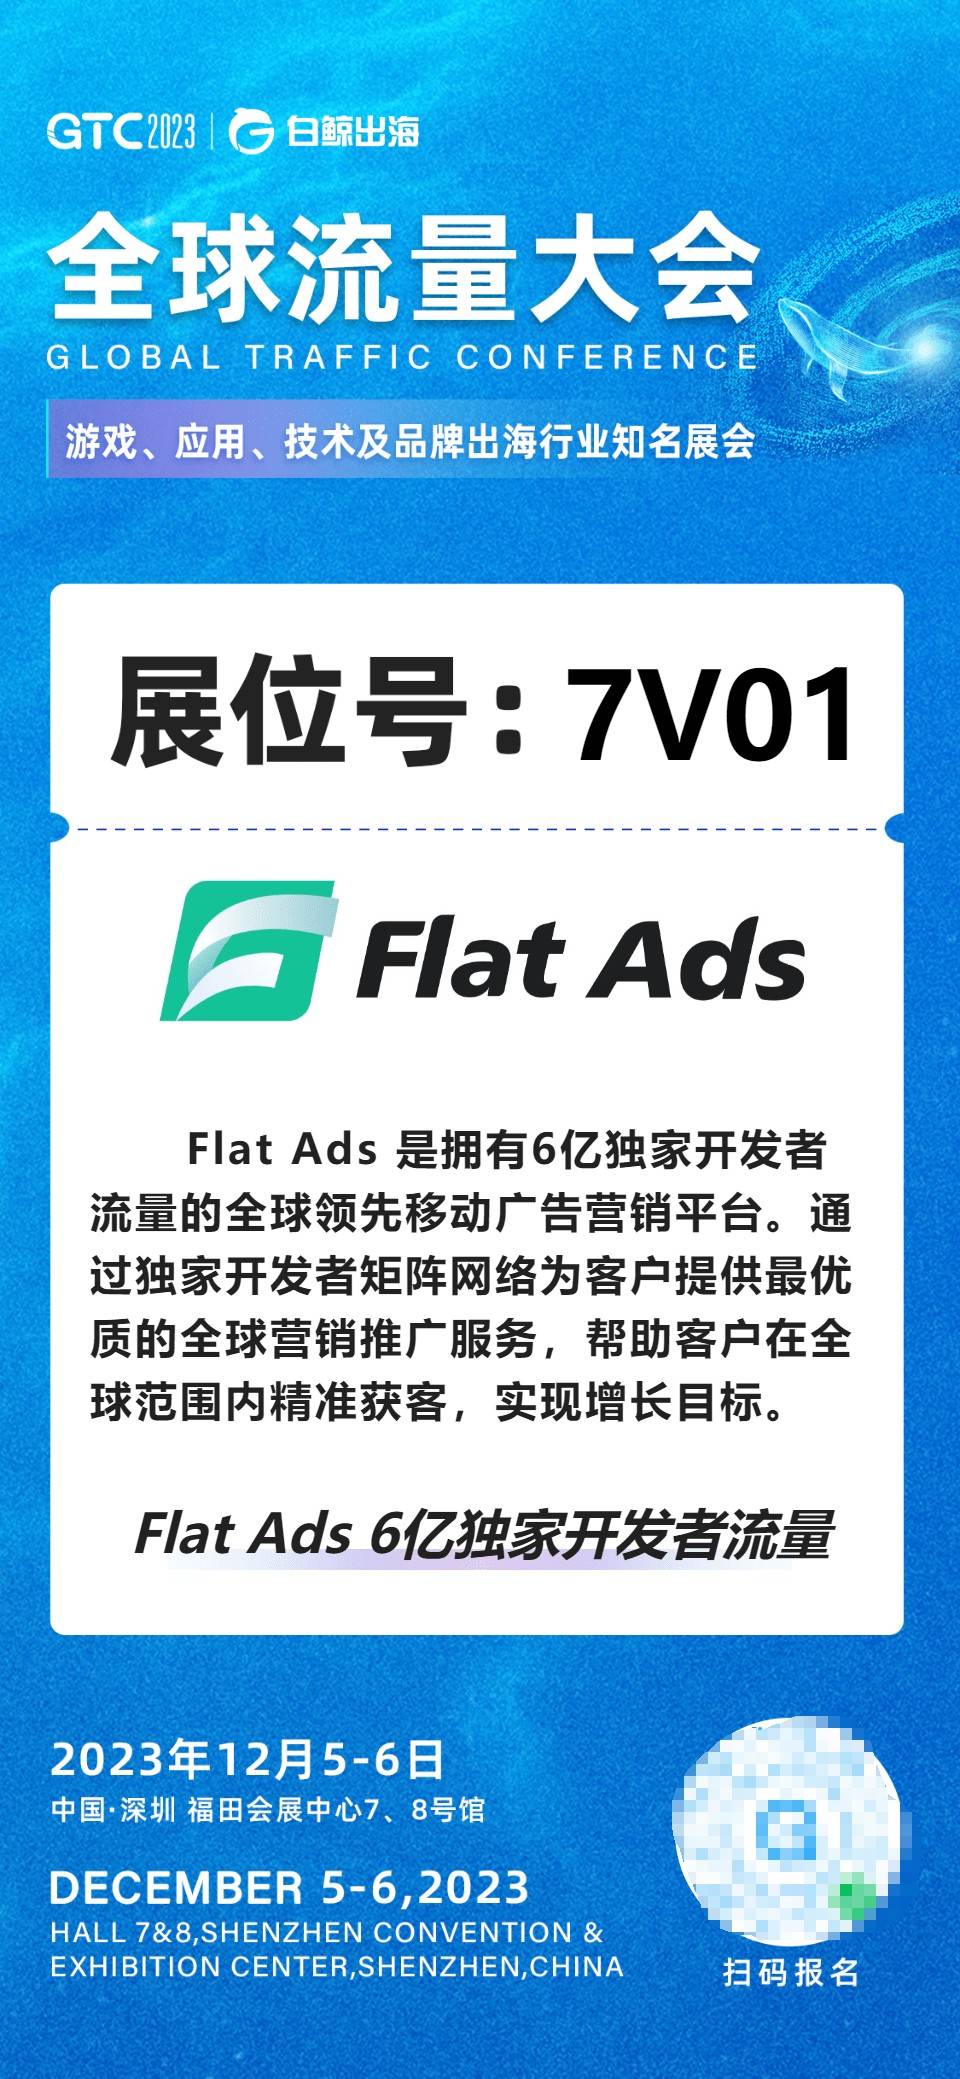 Flat Ads将携6亿独家流量亮相白鲸GTC2023，在7V01展台等你_移动广告